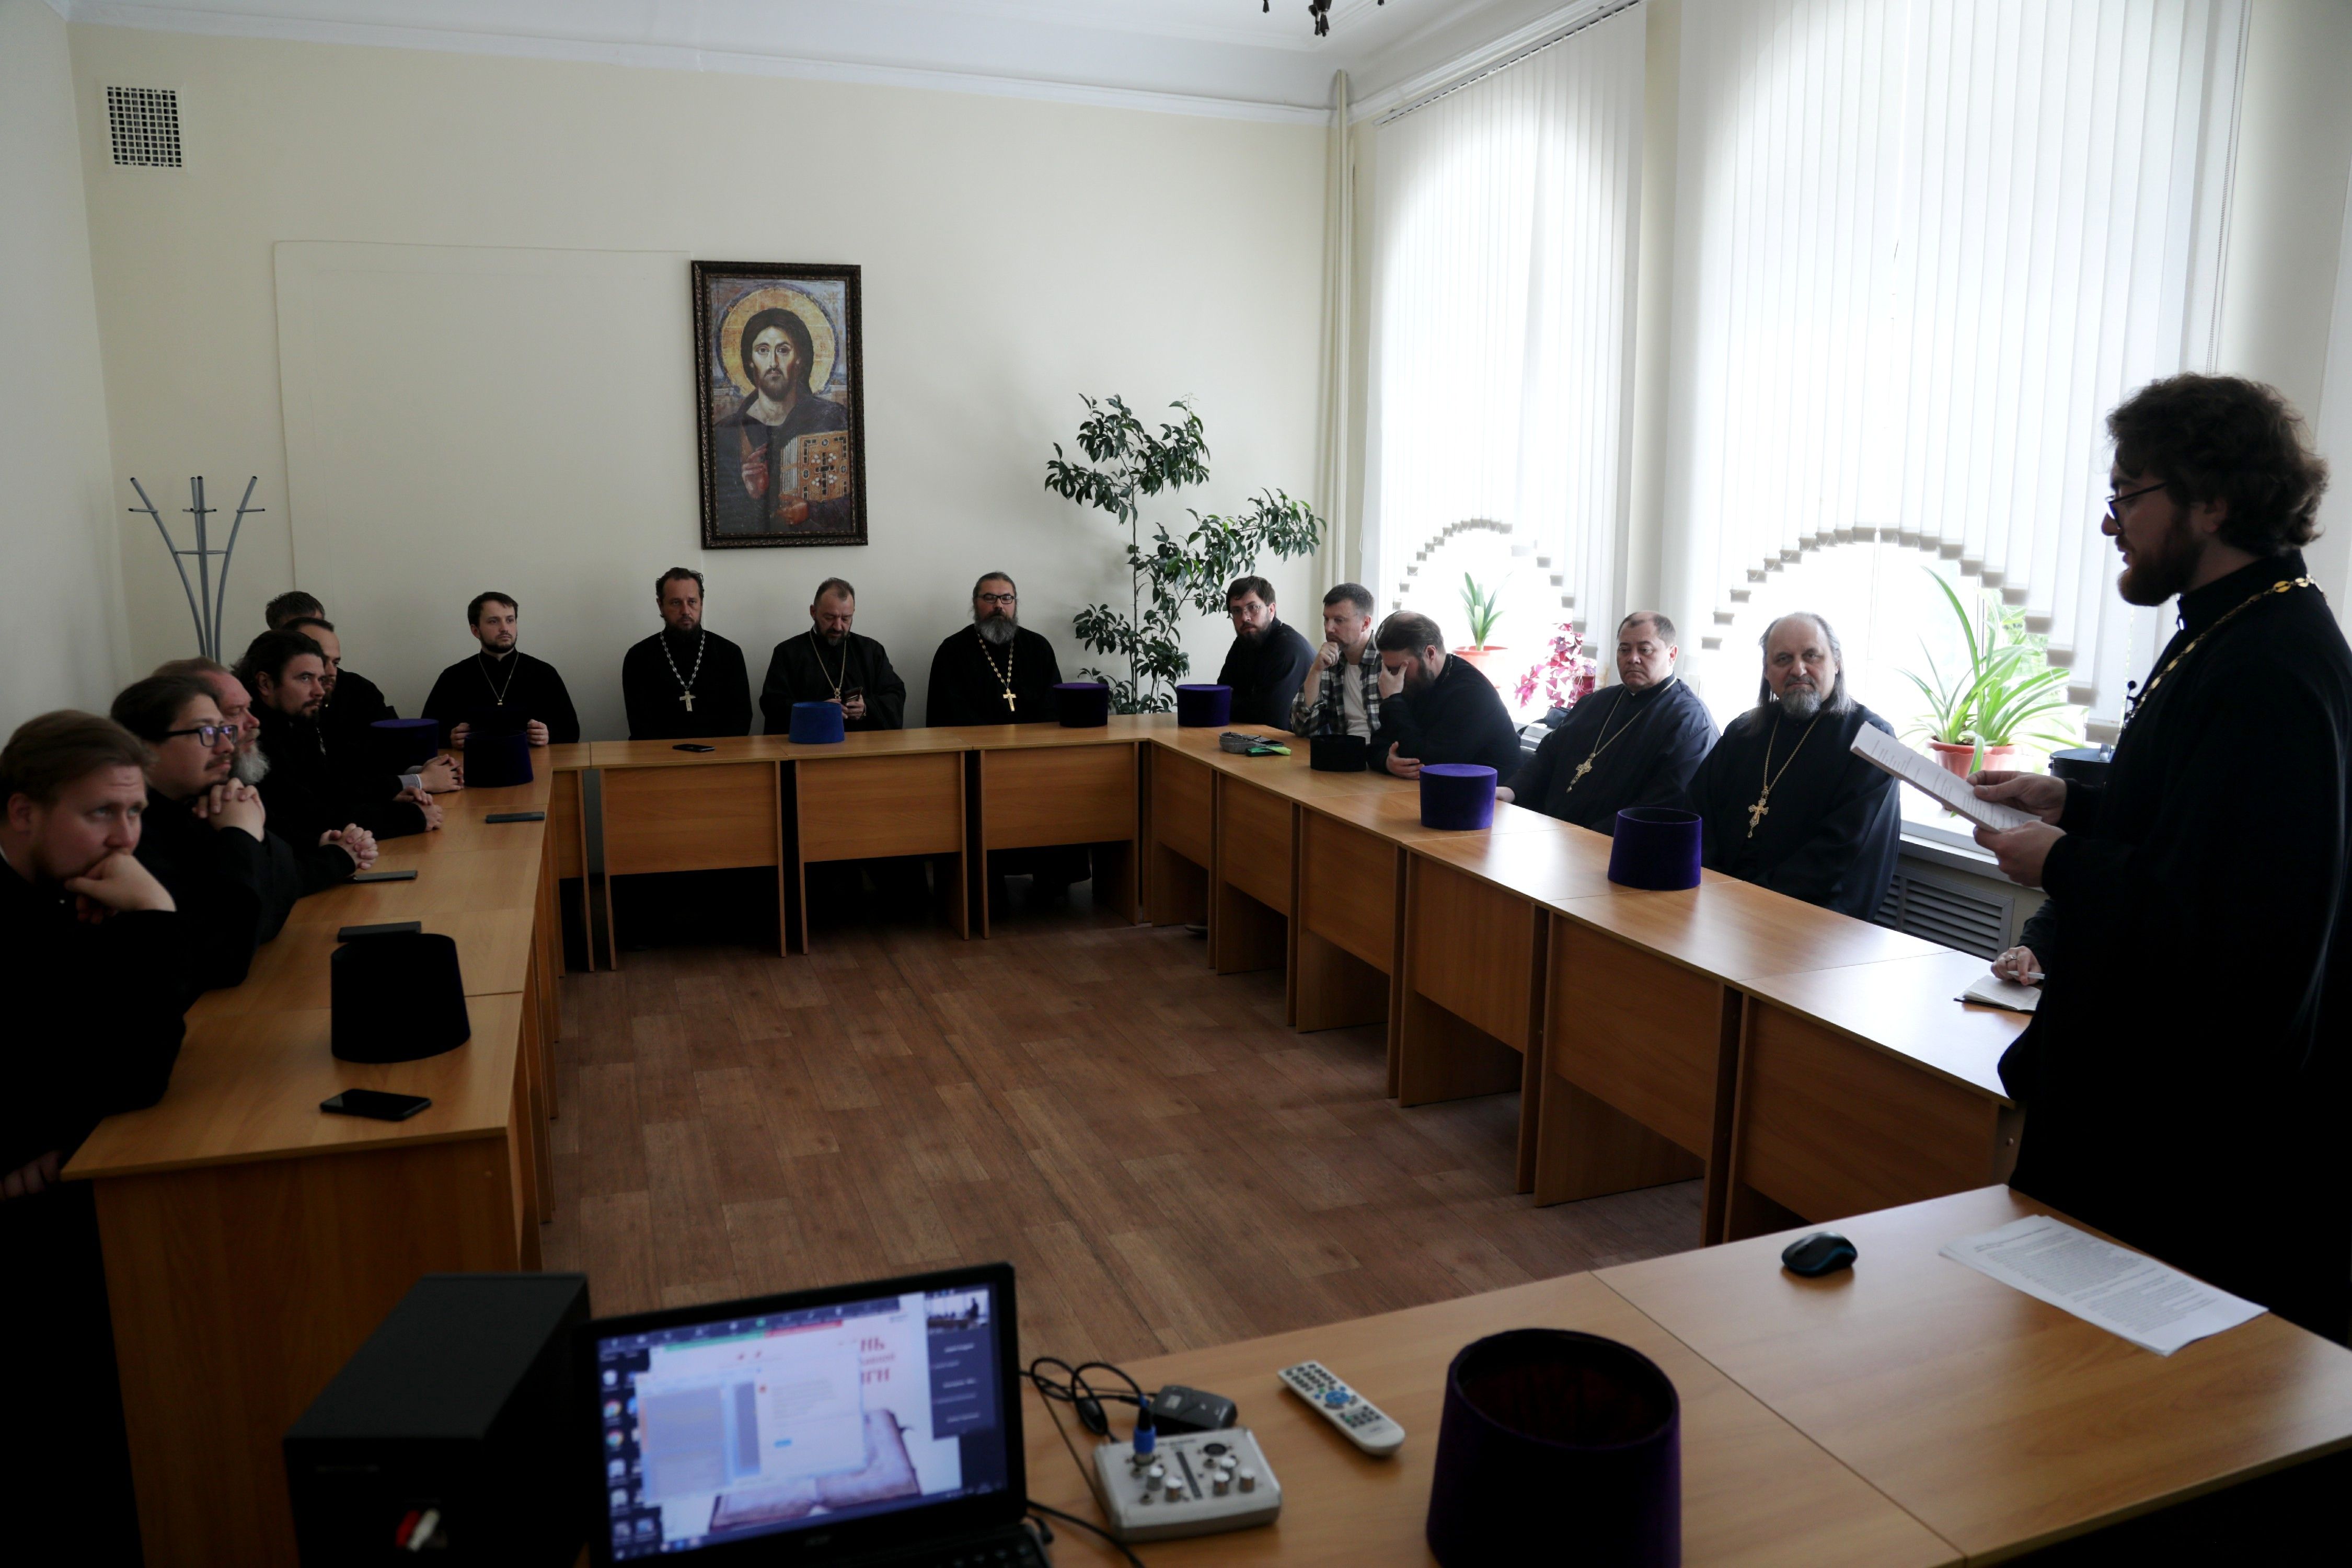 Круглый стол по итогам регионального проекта состоялся в Епархиальном управлении Владивостокской епархии